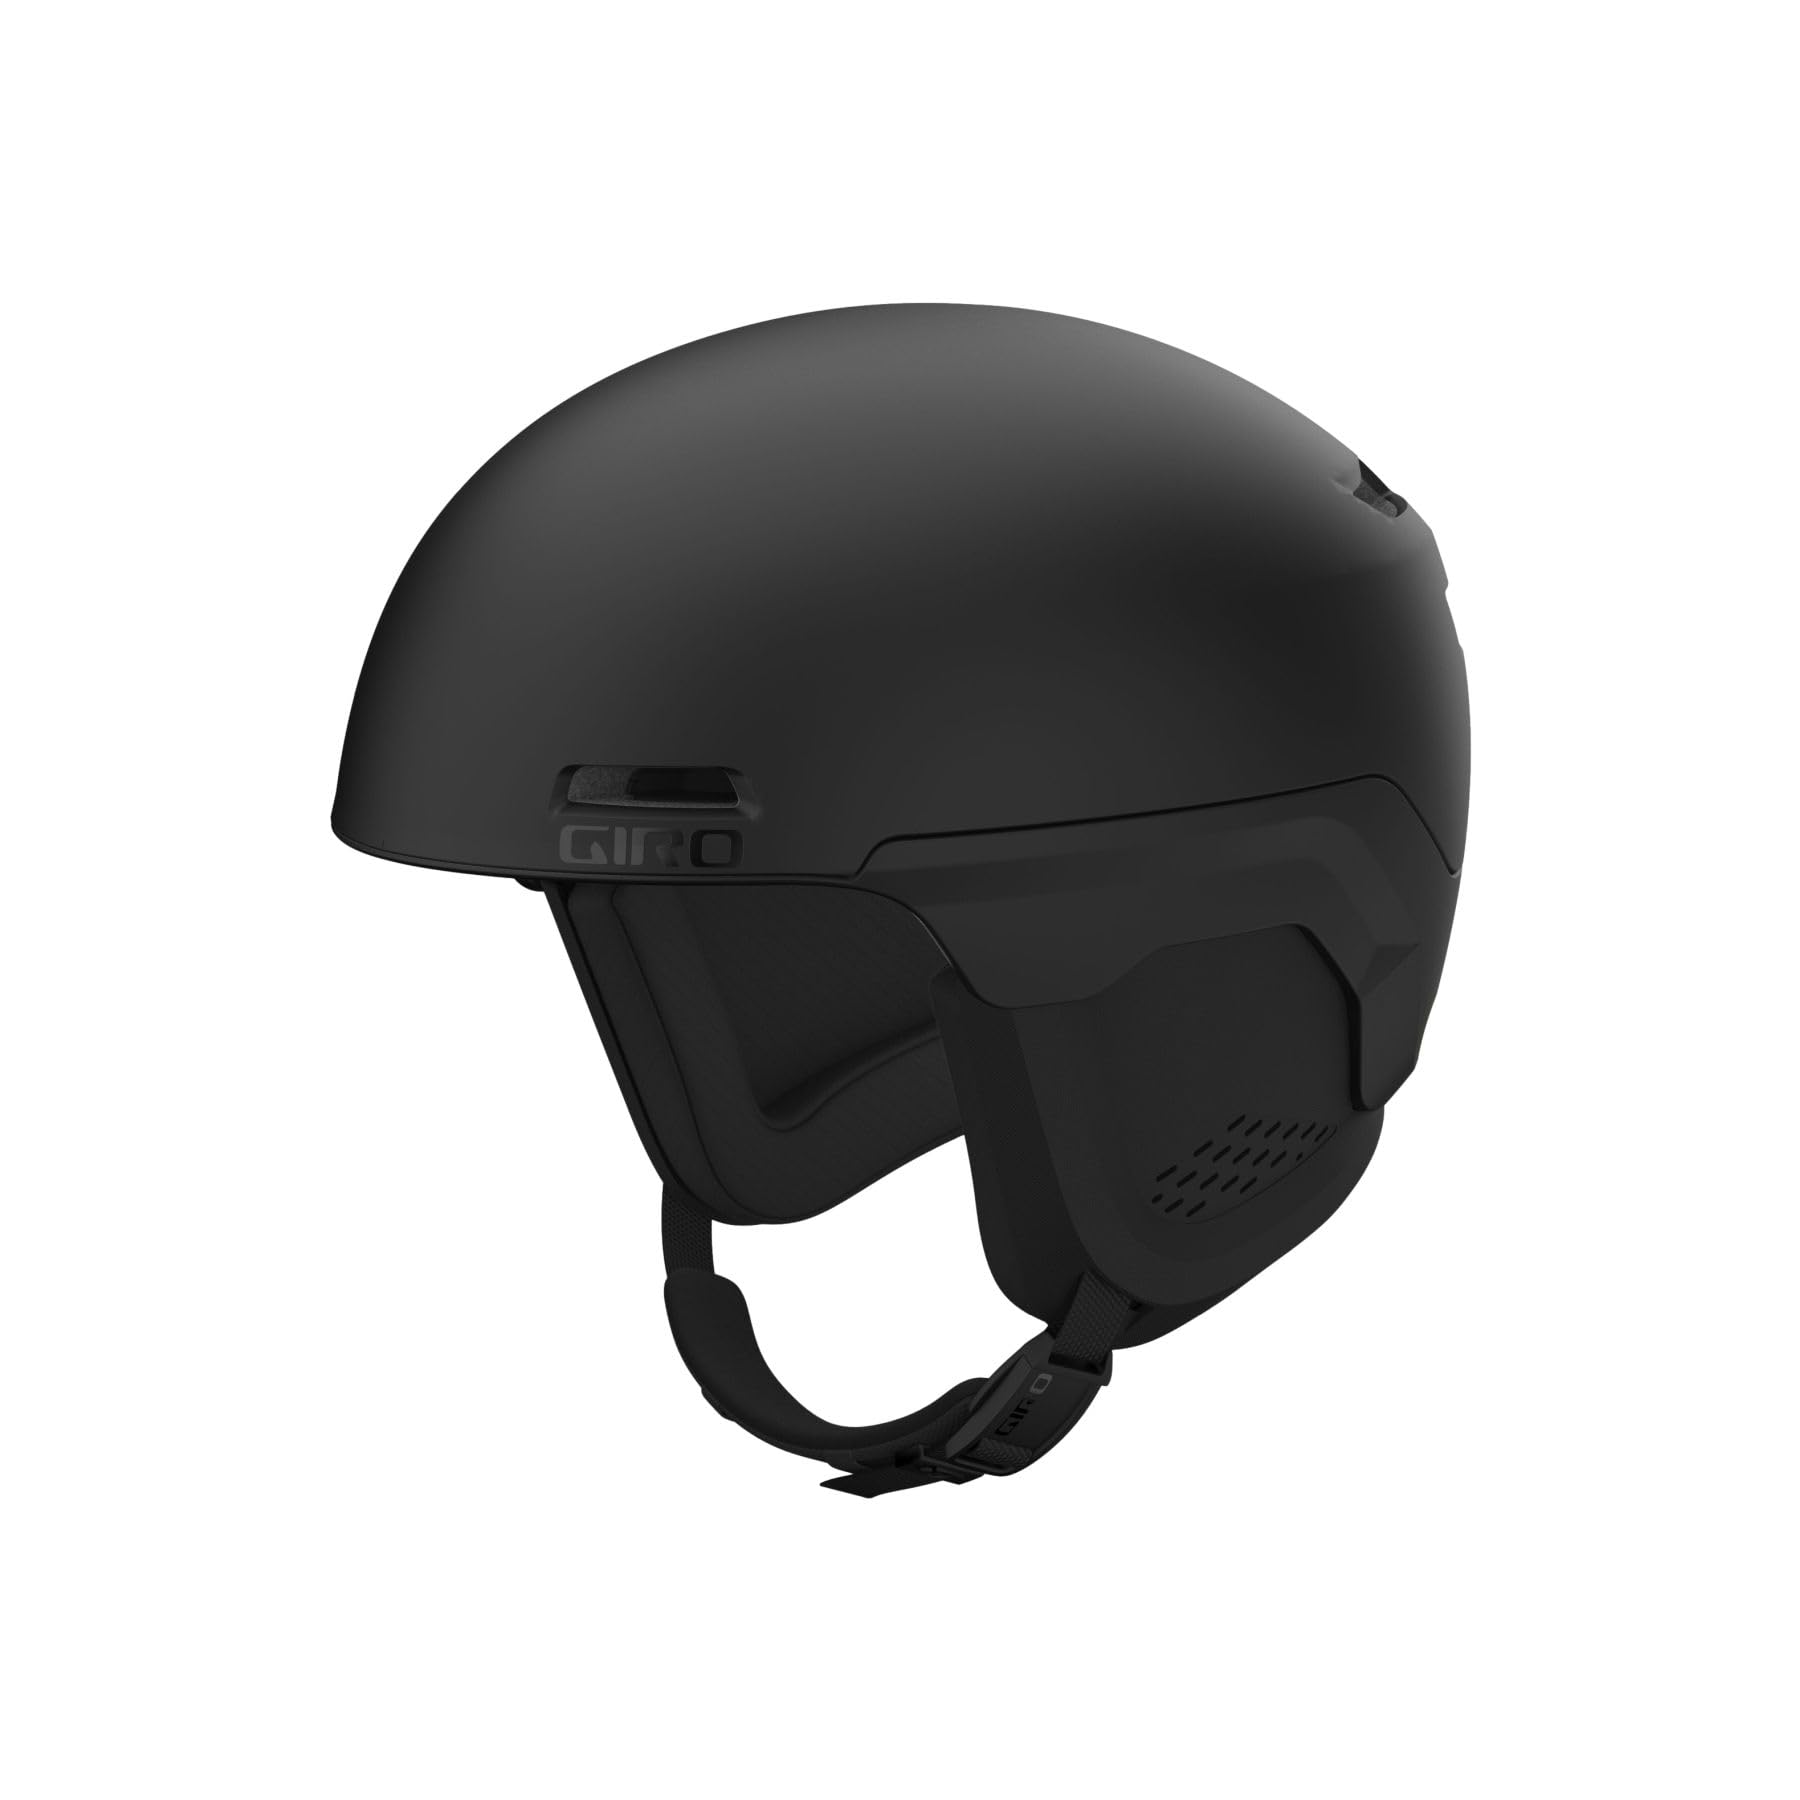 Giro Owen Spherical Ski Helmet - Snowboarding Helmet for Men Women and Youth - Matte Black - L 59-62.5cm並行輸入品